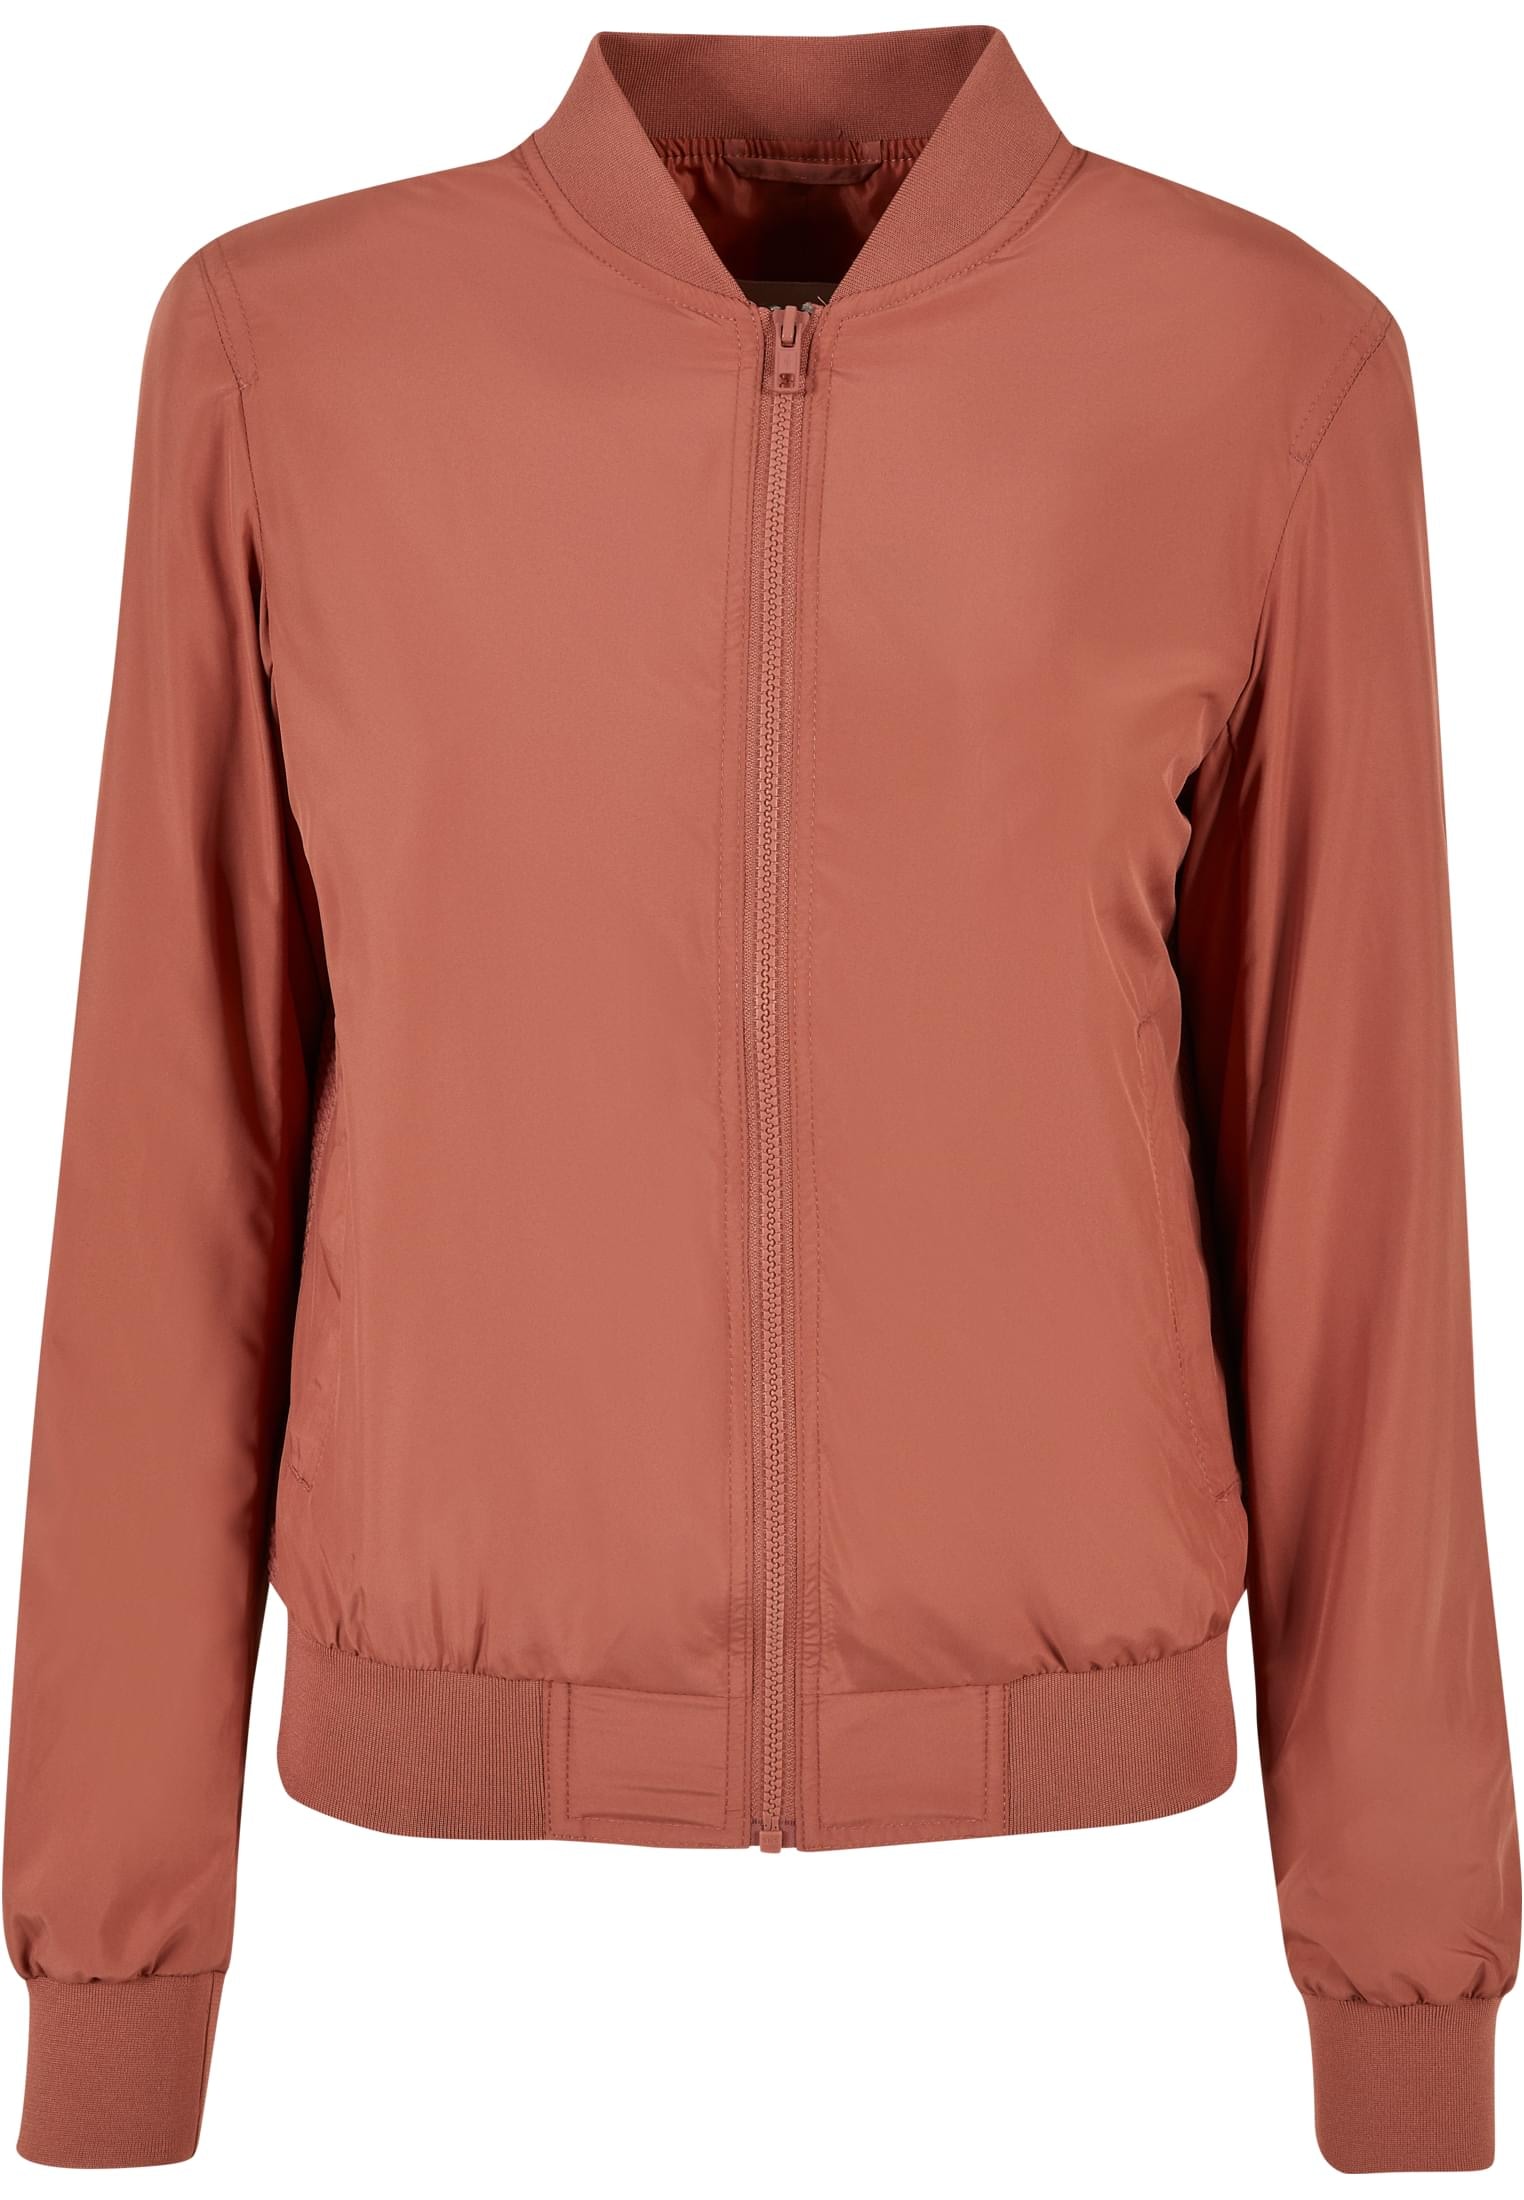 URBAN CLASSICS Jacket«, Outdoorjacke Ladies »Damen St.) für kaufen | Light (1 BAUR Bomber